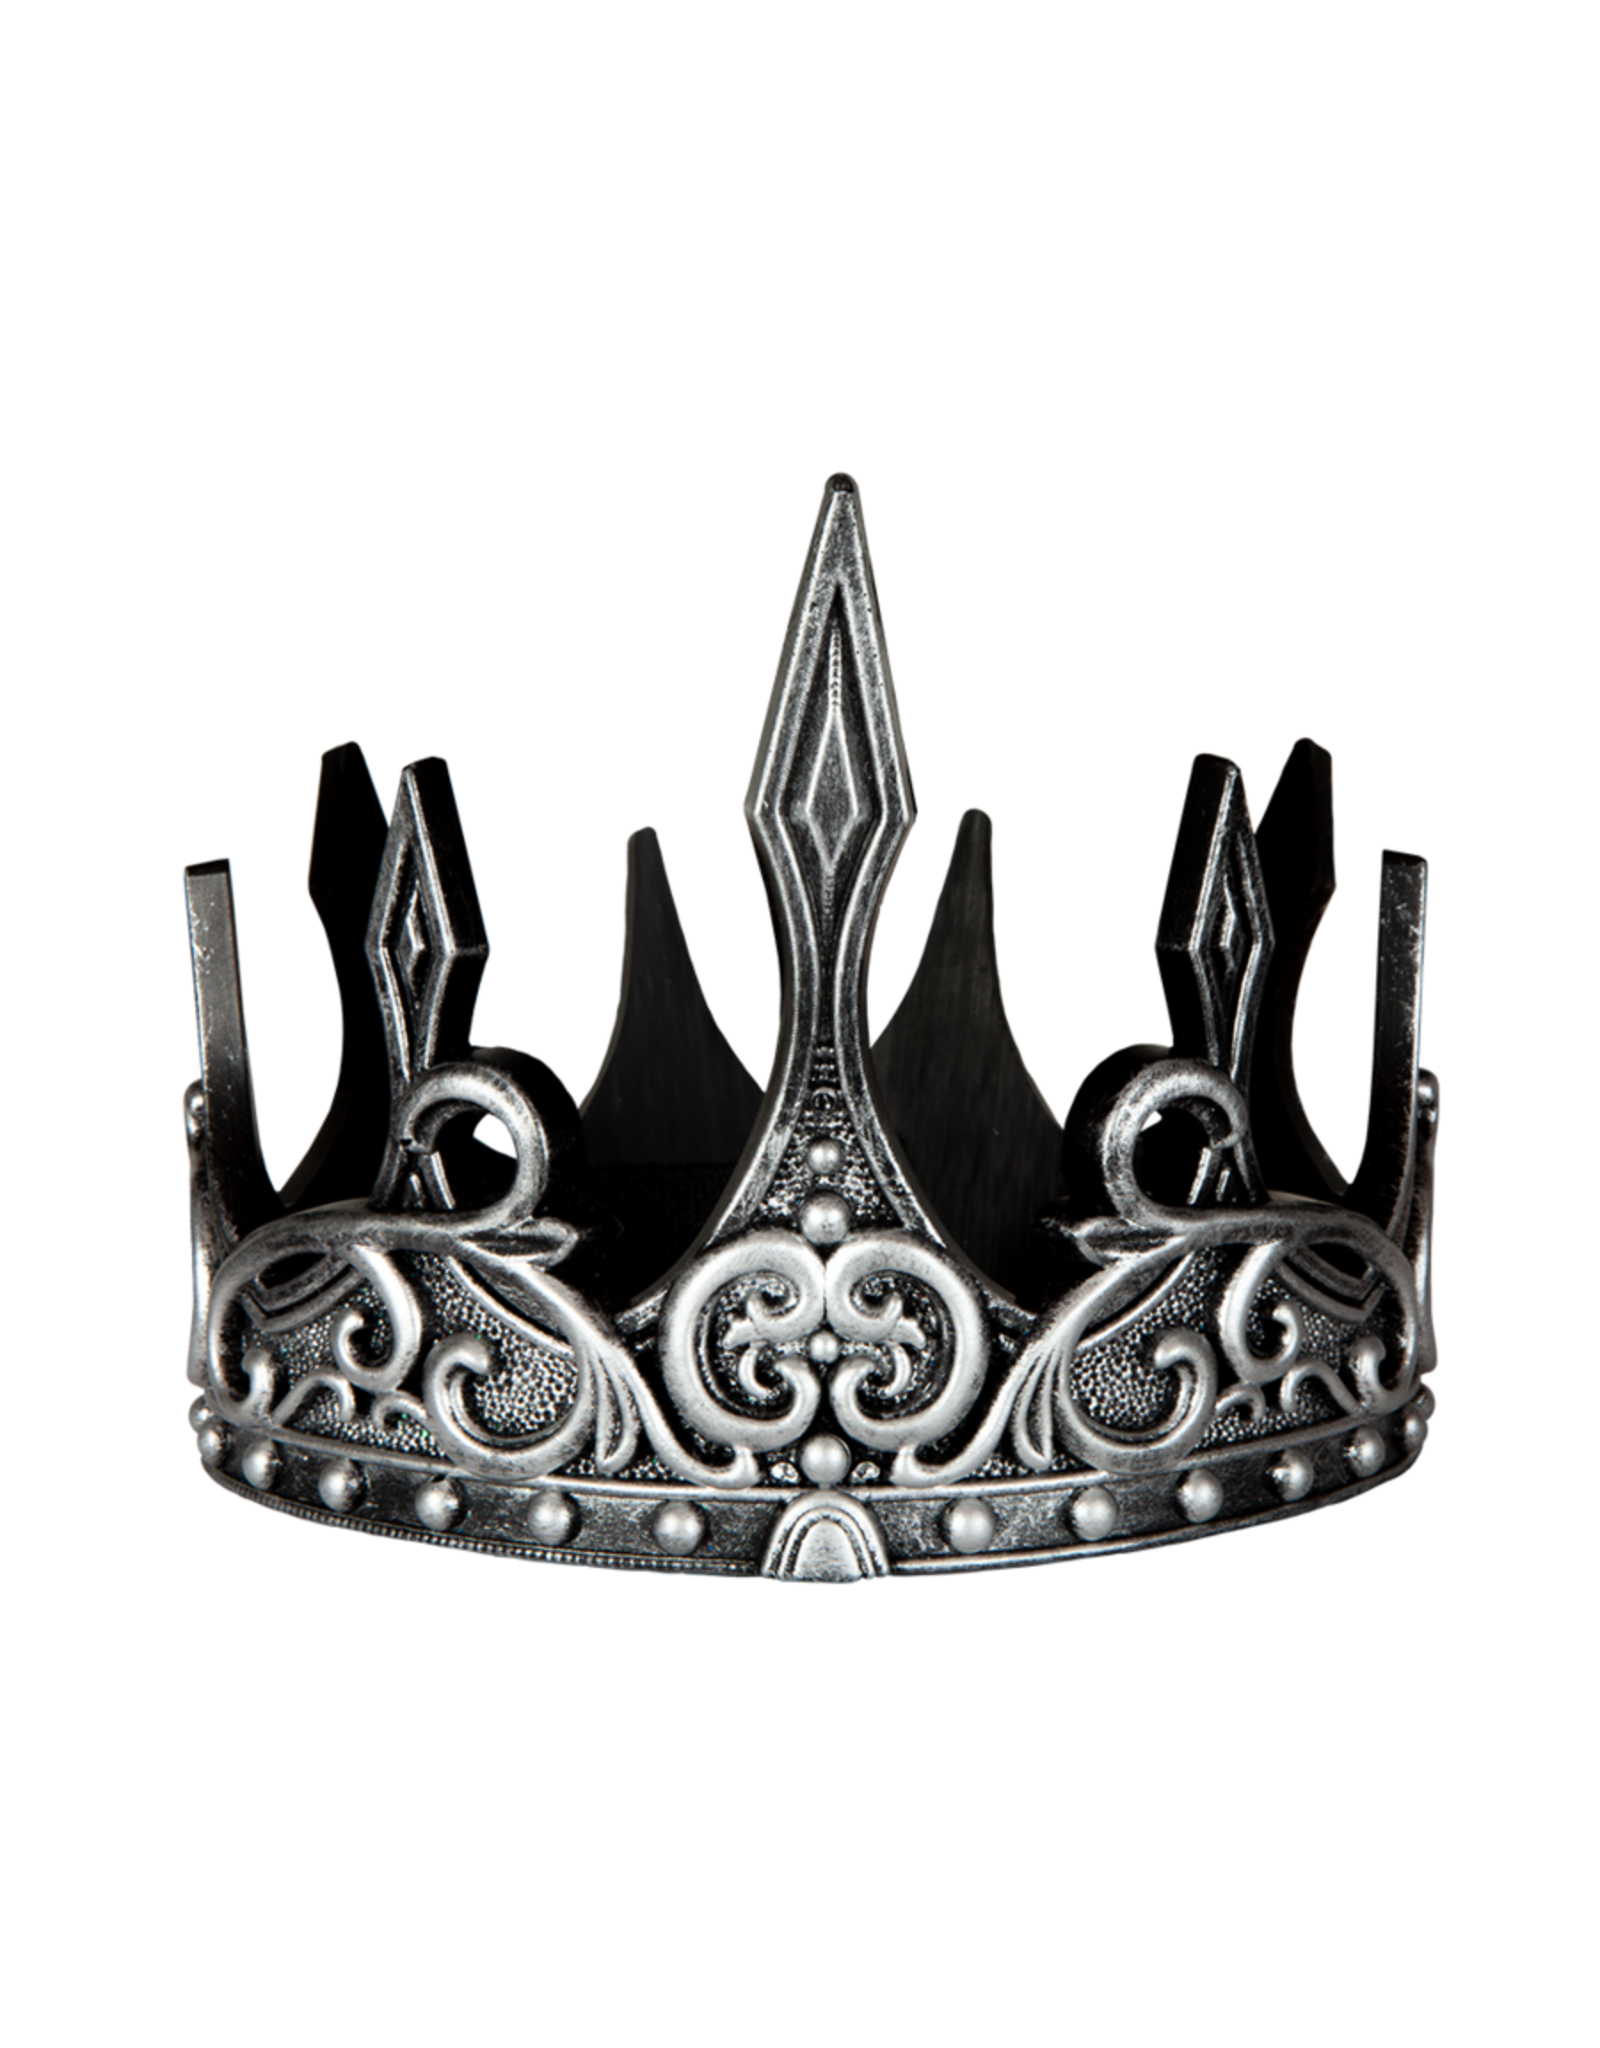 Great Pretenders Medieval Crown Silver/Black